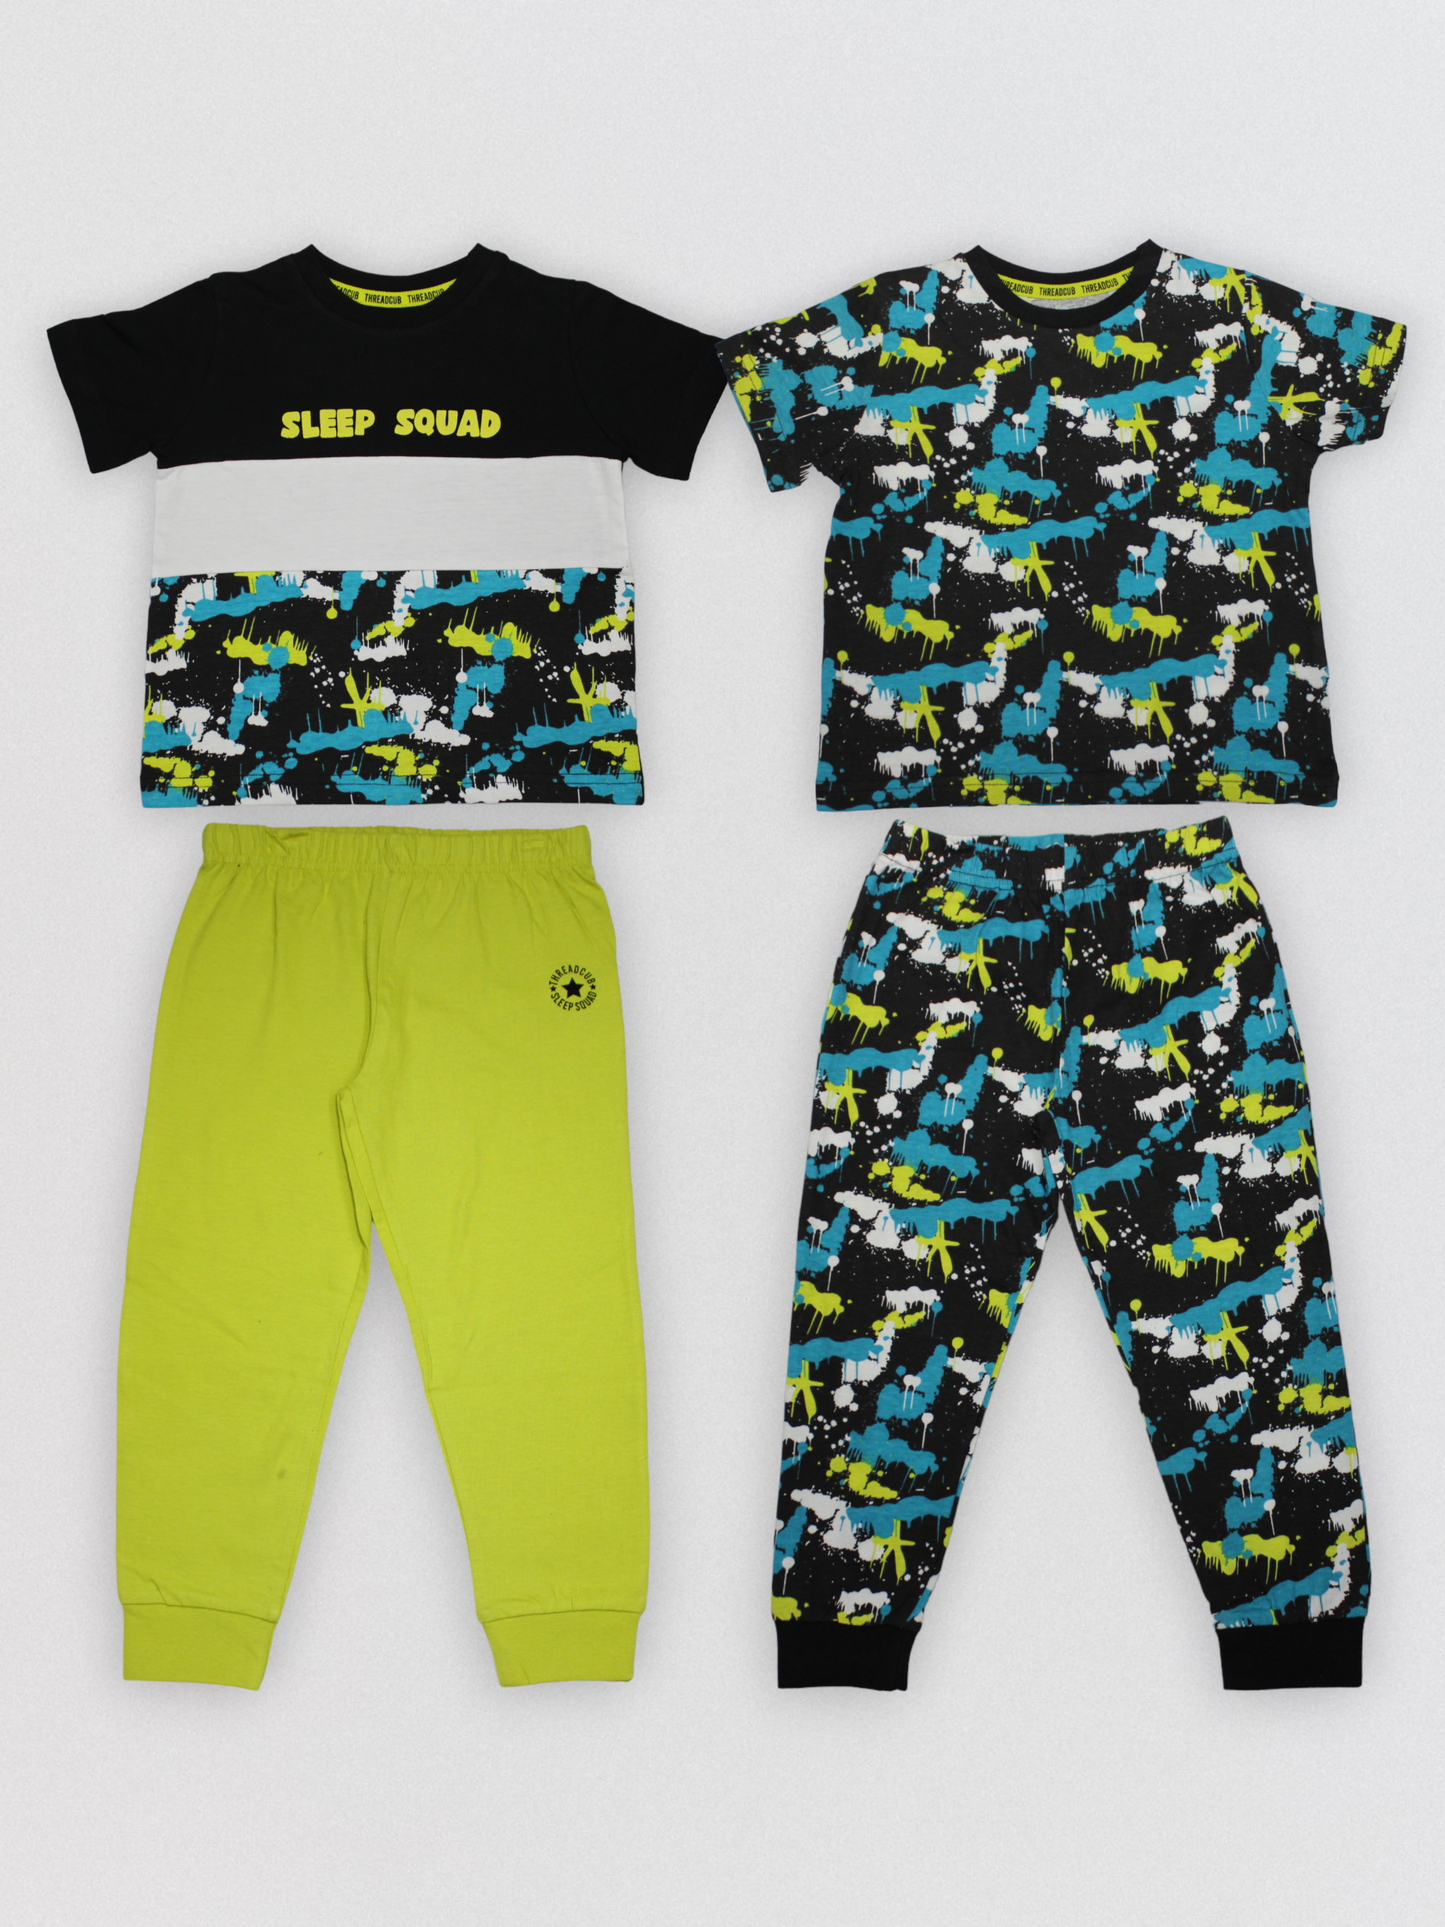 Sleep Squad - Kids Pyjama Set Value Pack. ( Pack of 2 )